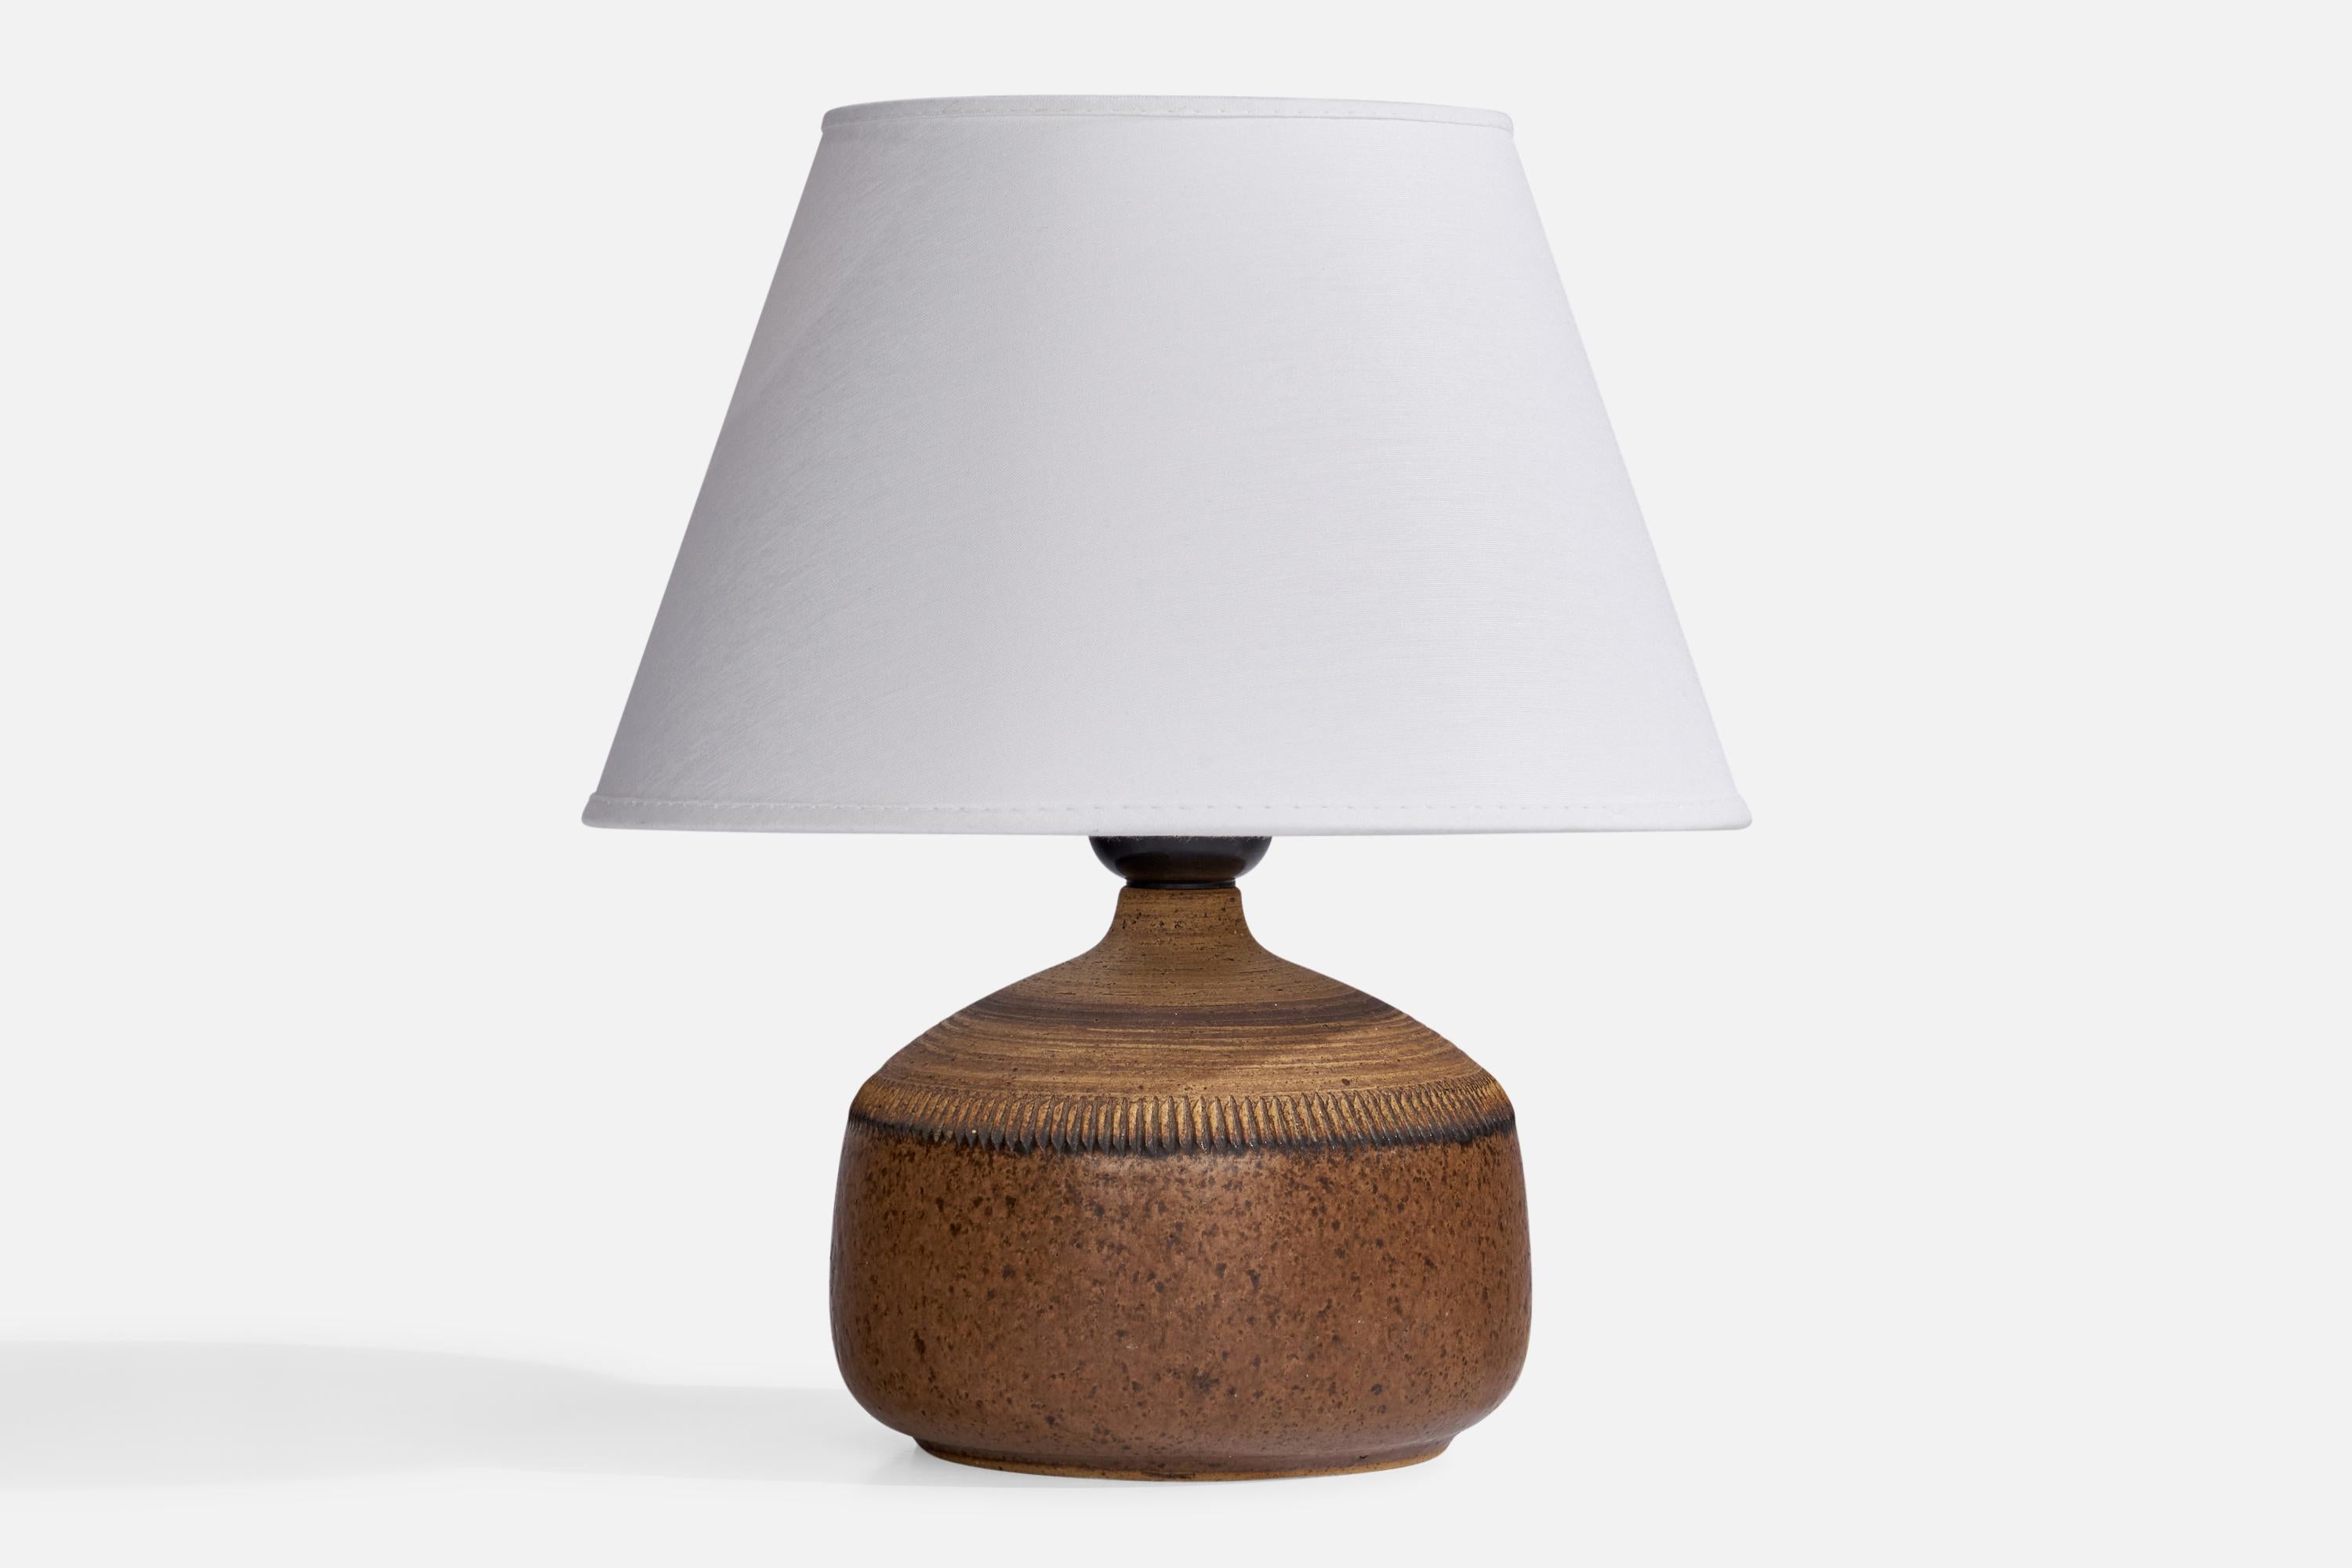 Tischlampe aus braun glasiertem Steingut, entworfen und hergestellt von Klase Höganäs, Schweden, 1960er Jahre.

Abmessungen der Lampe (Zoll): 6,25